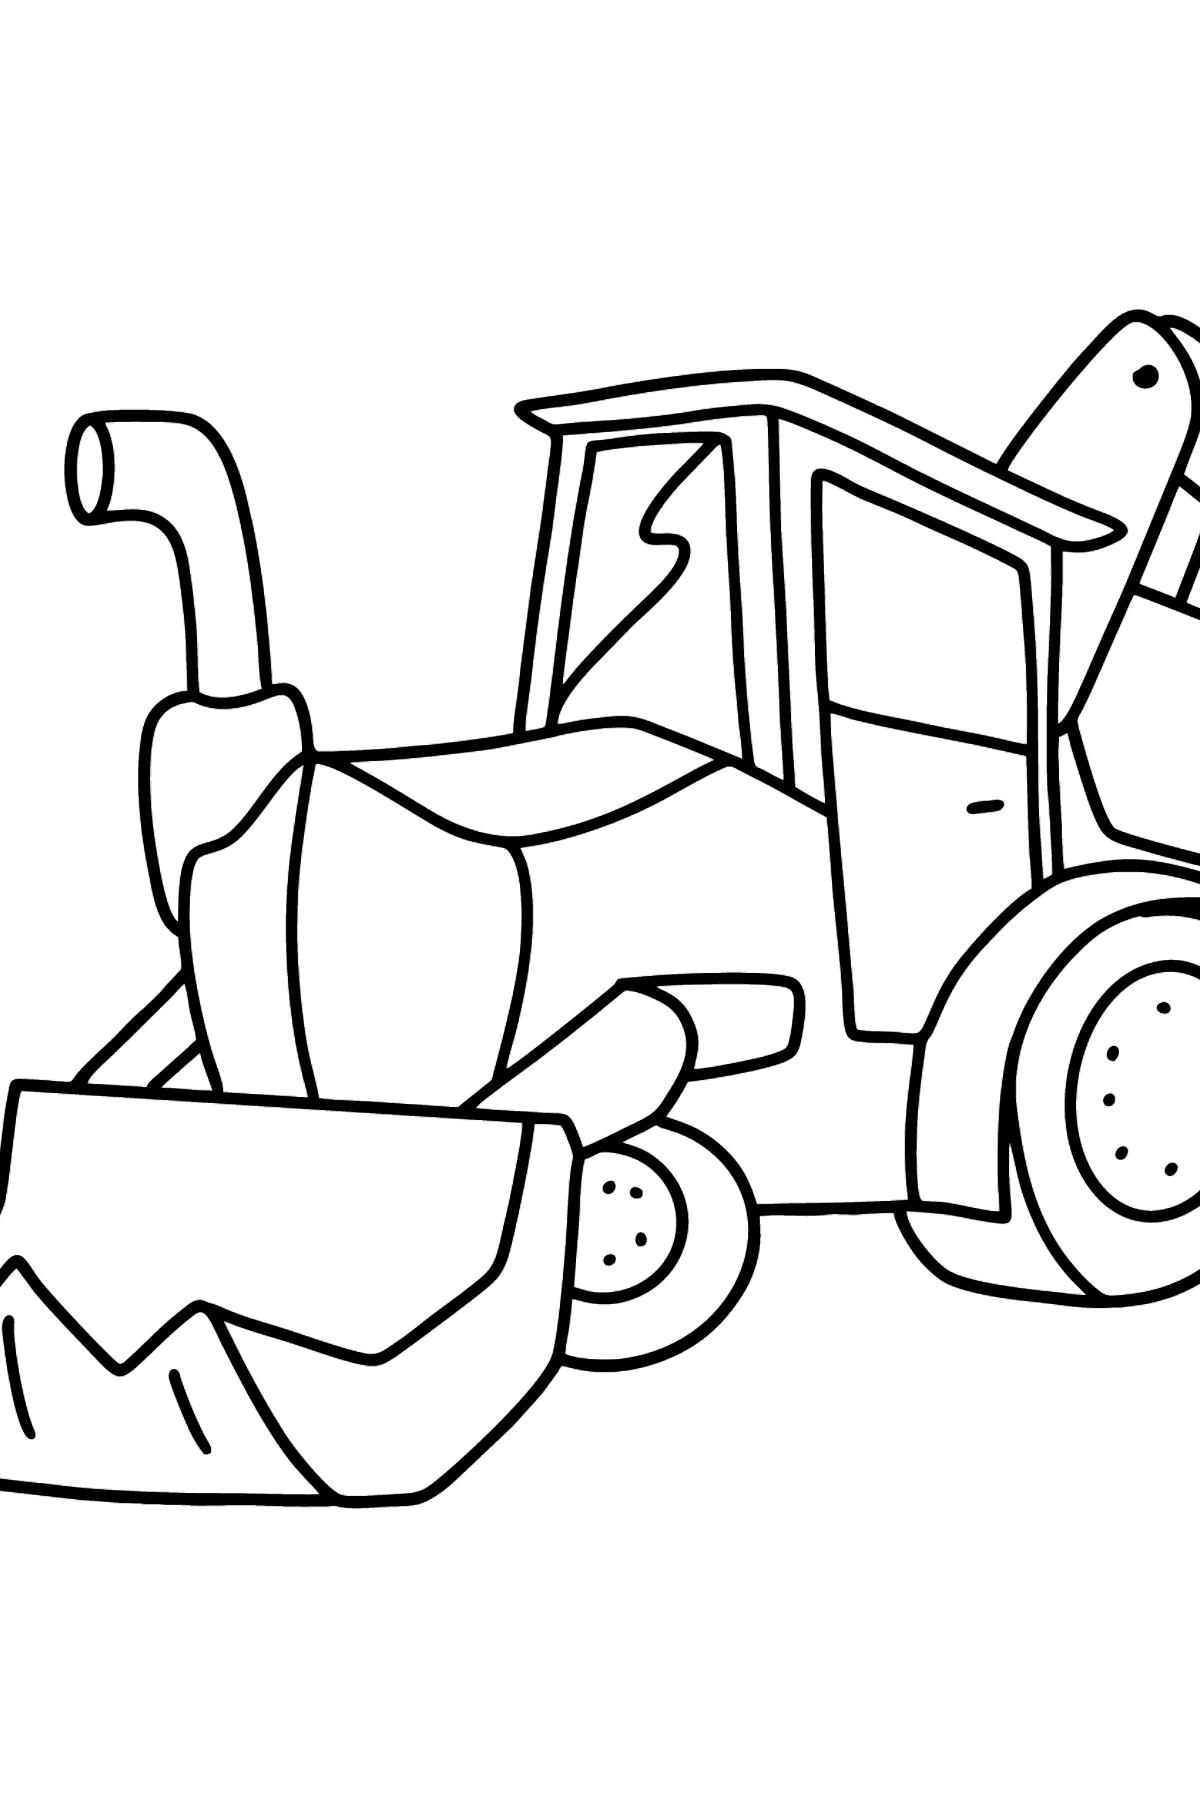 Ausmalbild Traktor mit zwei Schaufeln - Malvorlagen für Kinder